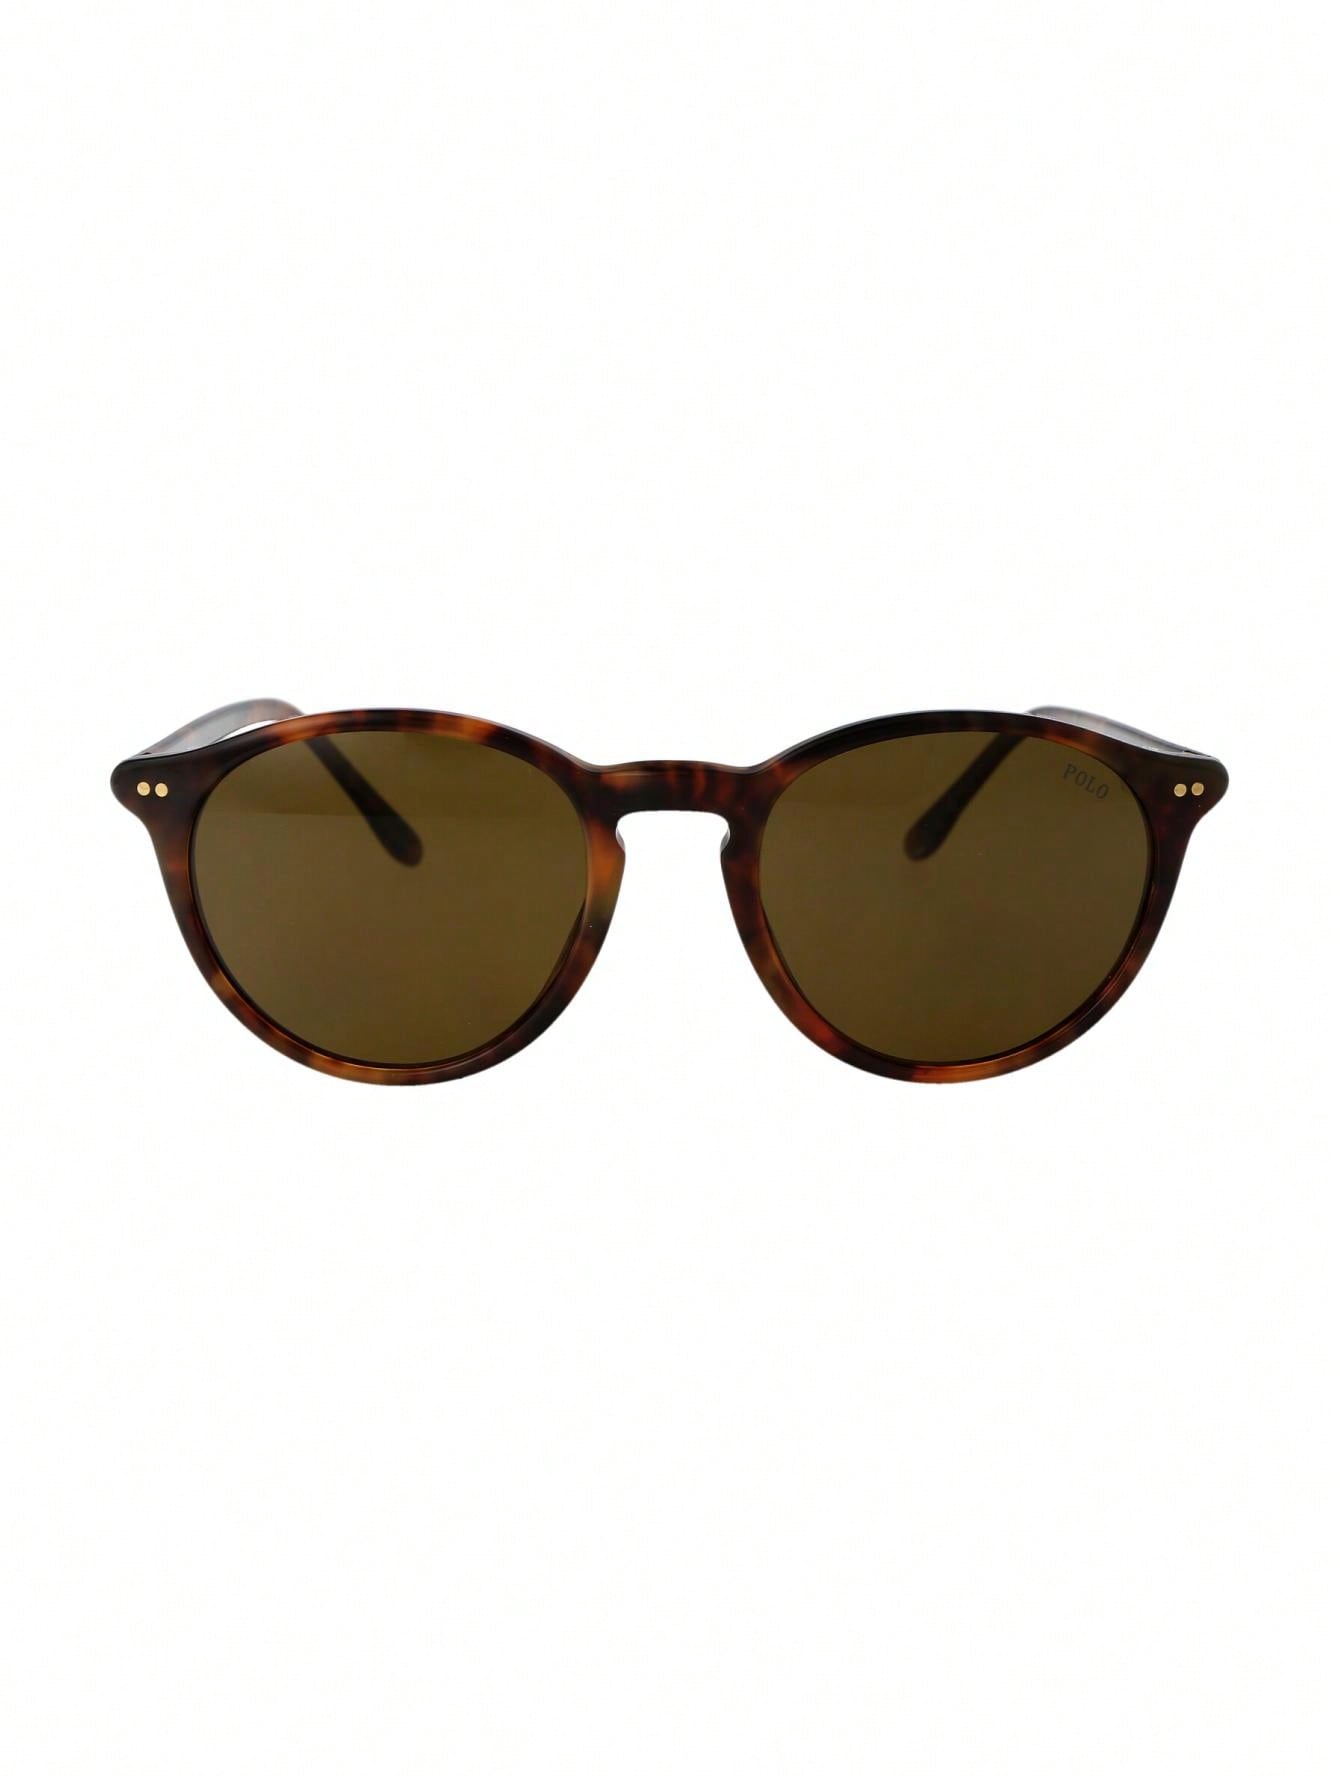 Мужские солнцезащитные очки Polo Ralph Lauren DECOR 0PH4193501773, многоцветный солнцезащитные очки polo ralph lauren черный